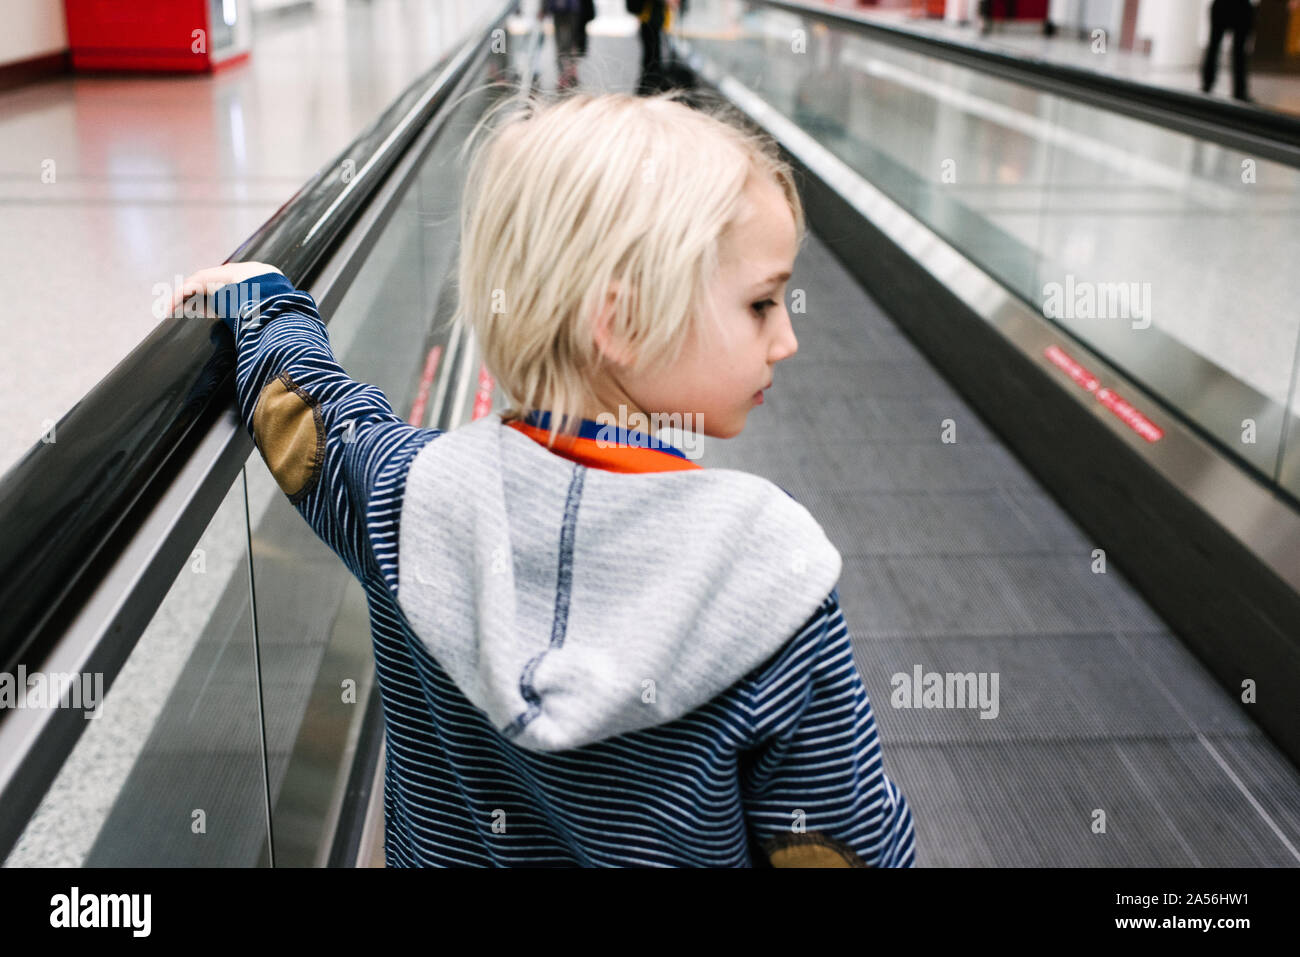 Capelli biondi boy su airport tapis roulant guardando sopra la sua spalla Foto Stock